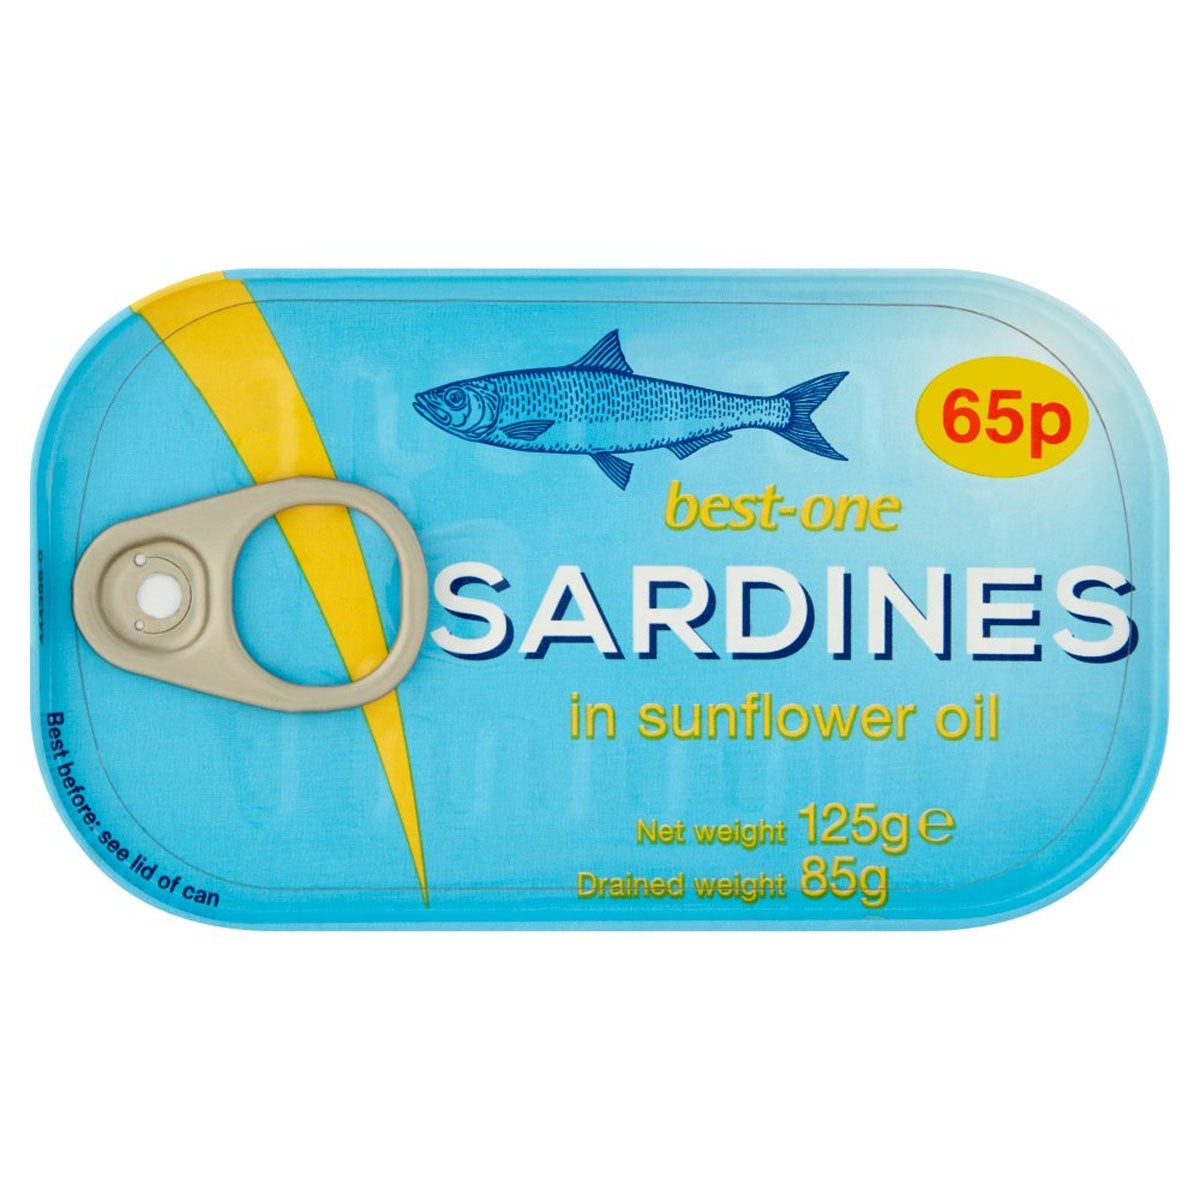 A Best One - Sardines in Sunflower Oil - 125g.